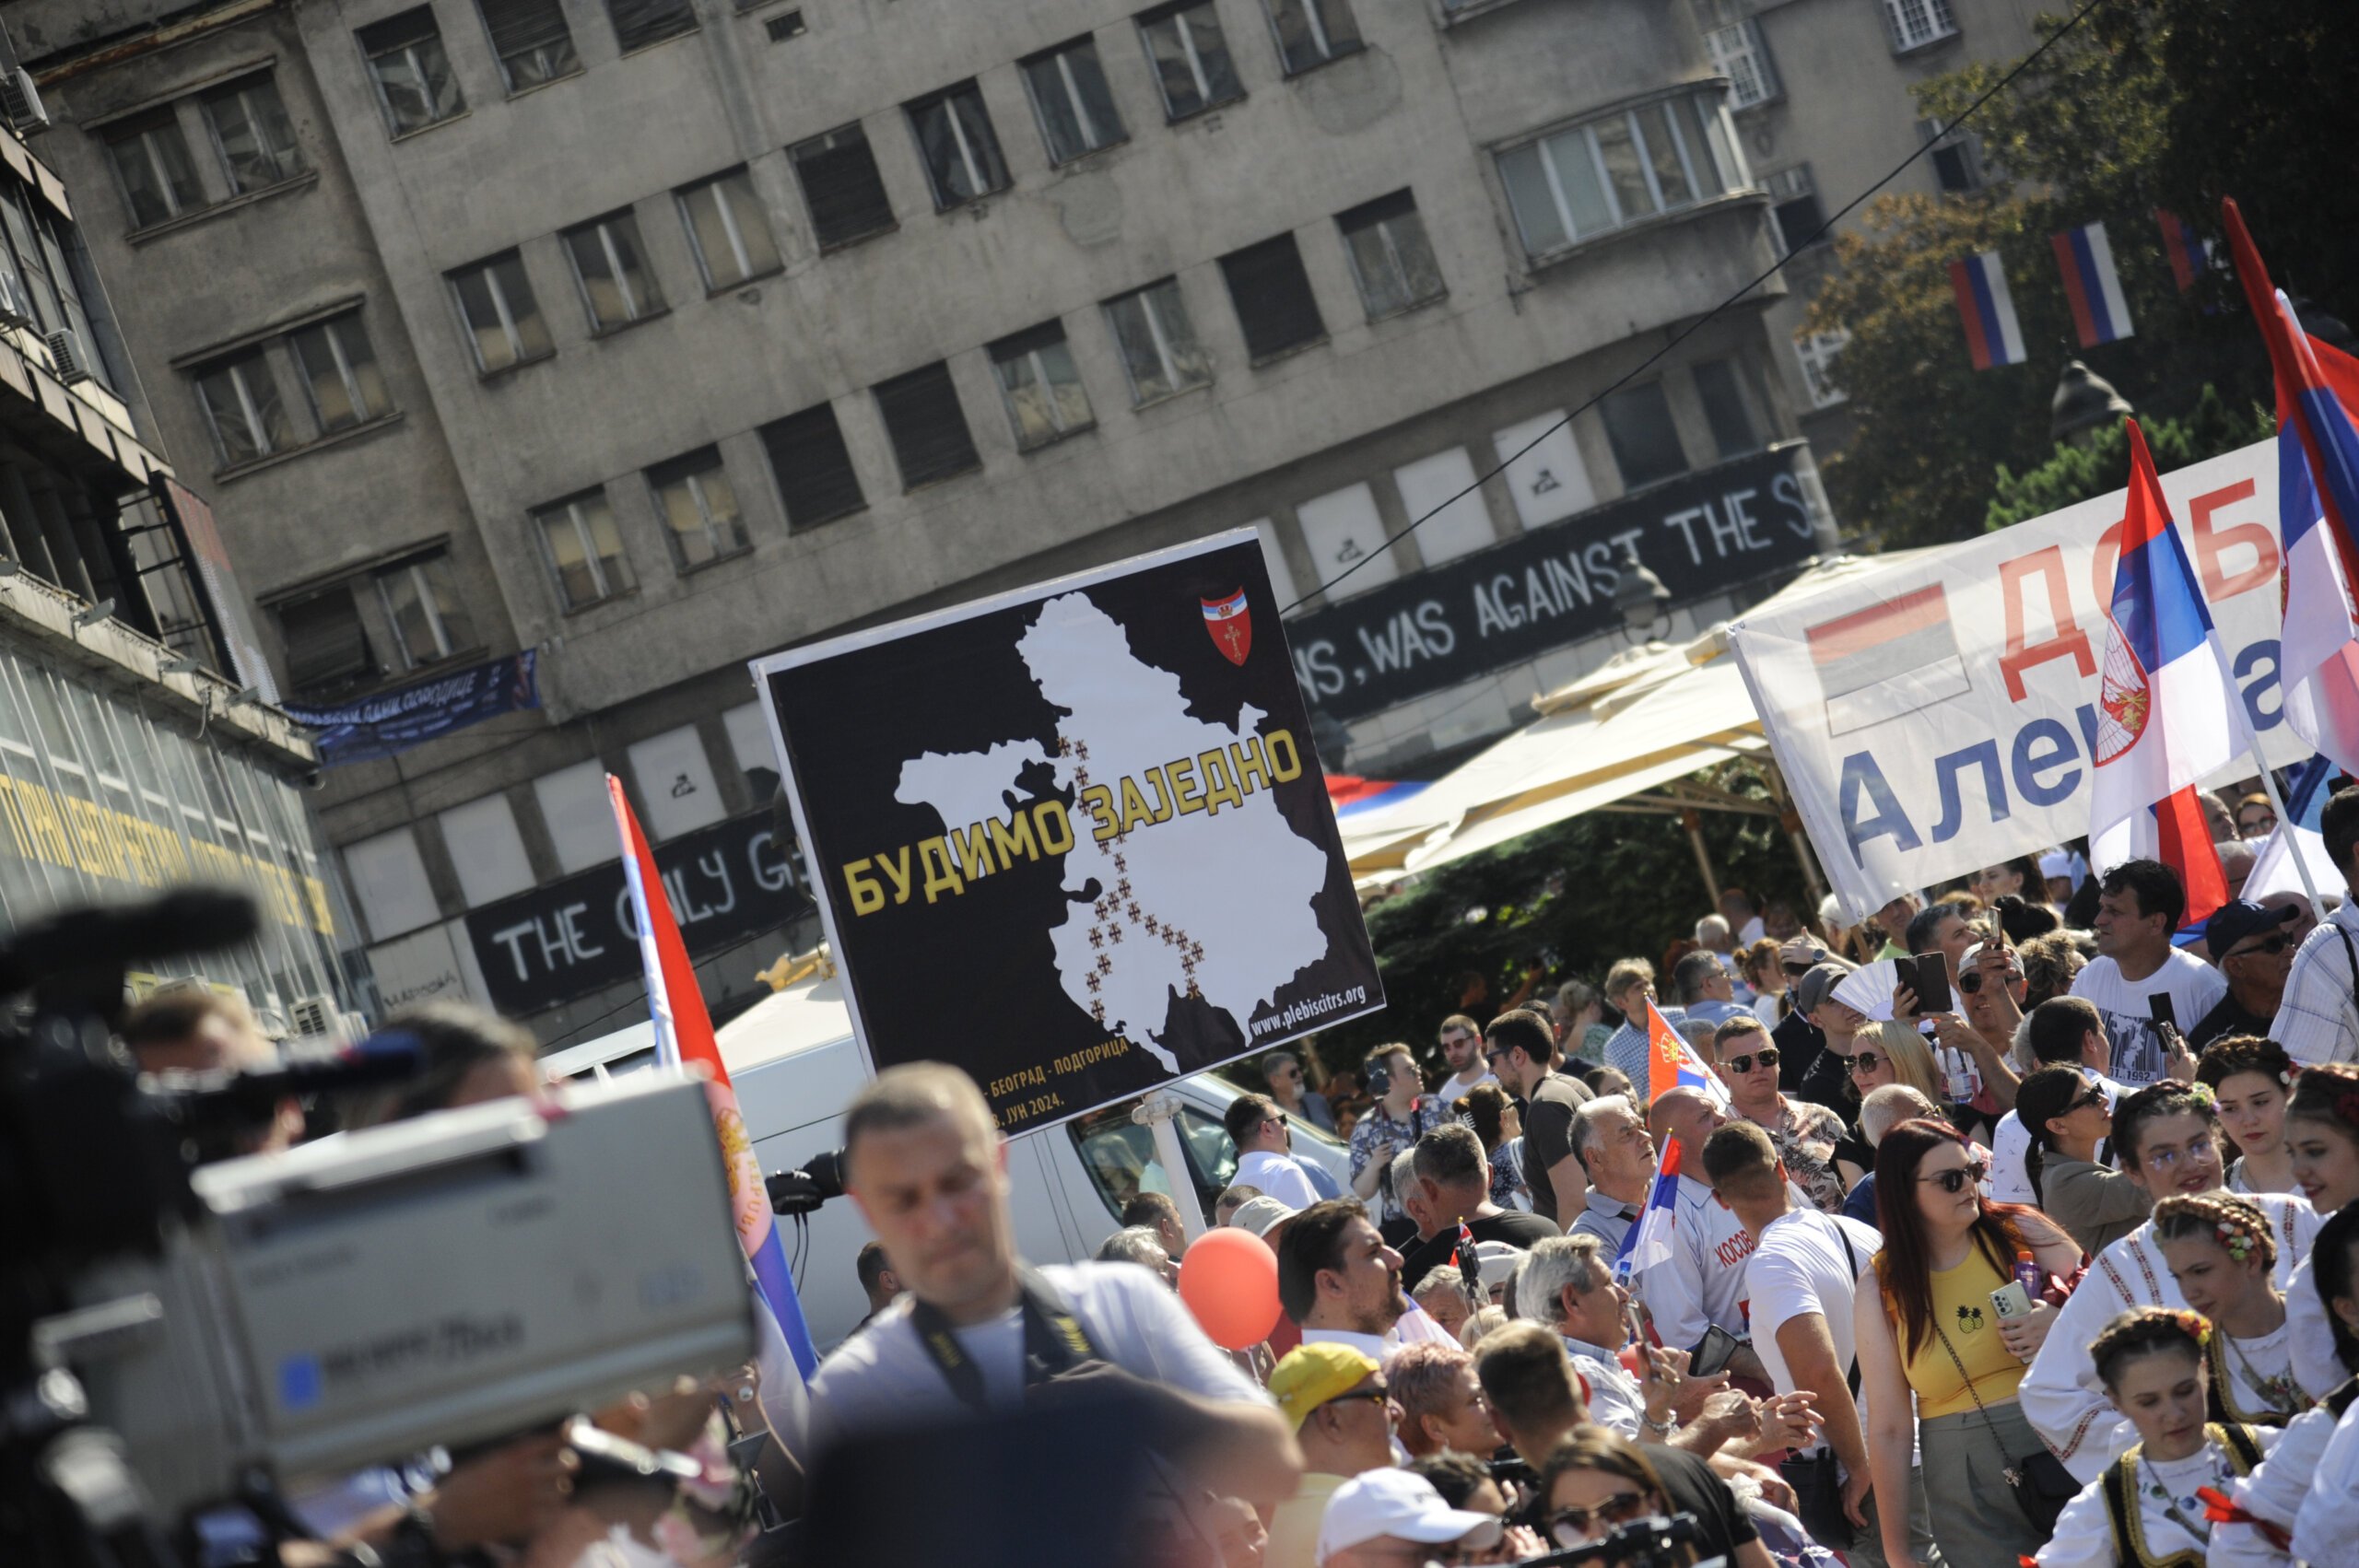 (FOTO) Kako je izgledala manifestacija "Jedan narod, jedan sabor - Srbija i Srpska" na Trgu republike u fotografijama? 15